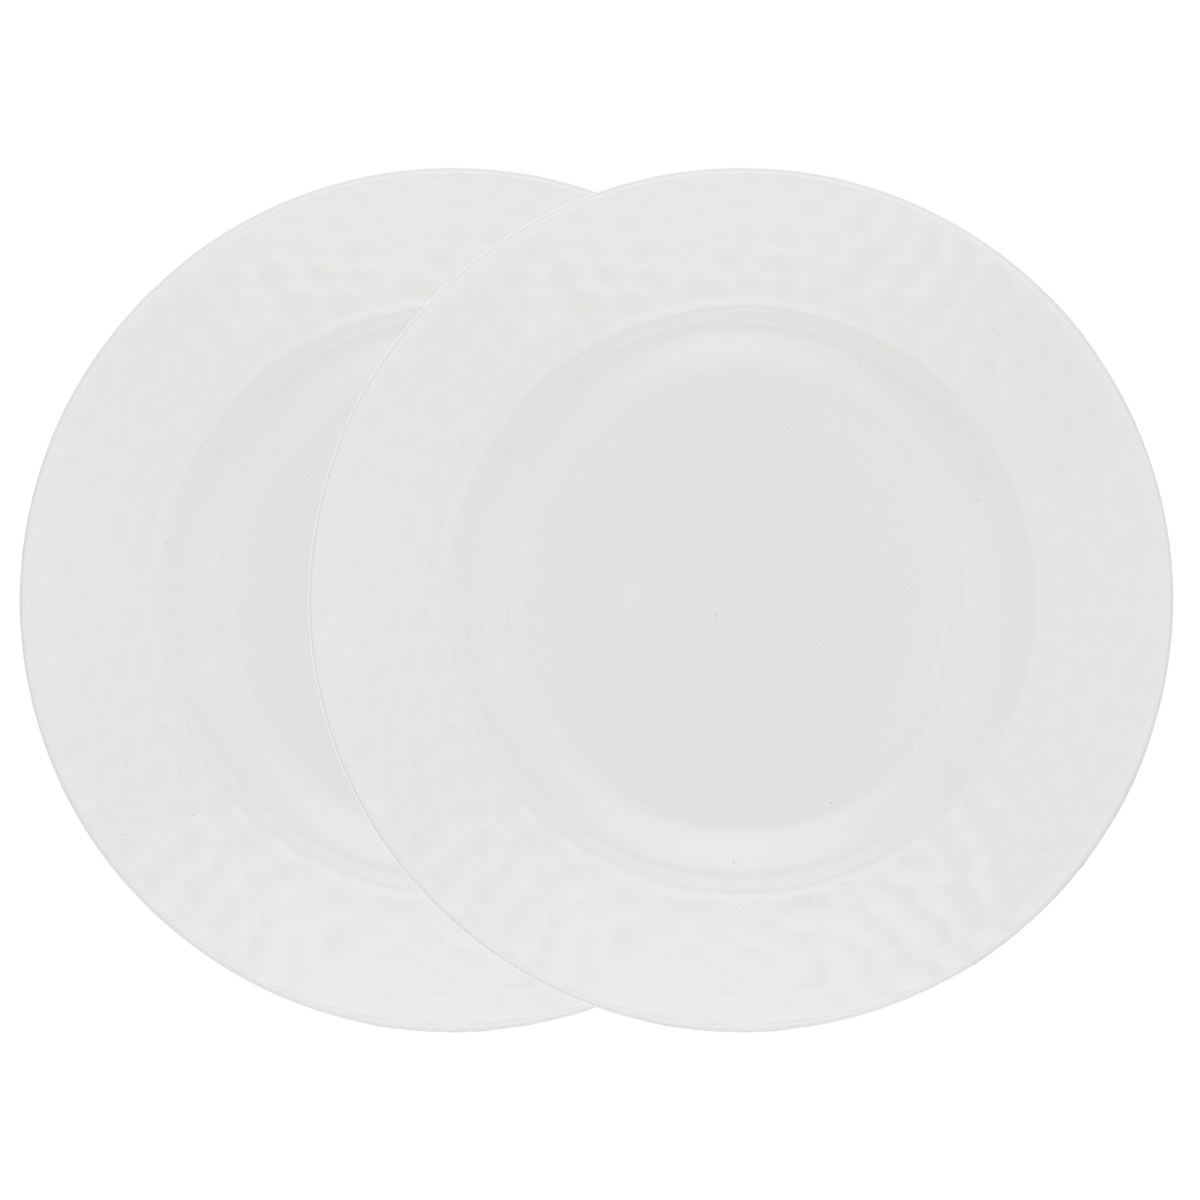 Набор суповых тарелок Gipfel Marbella 51713 20 см 2 предмета набор тарелок суповых gipfel hermes 20 см 2 шт